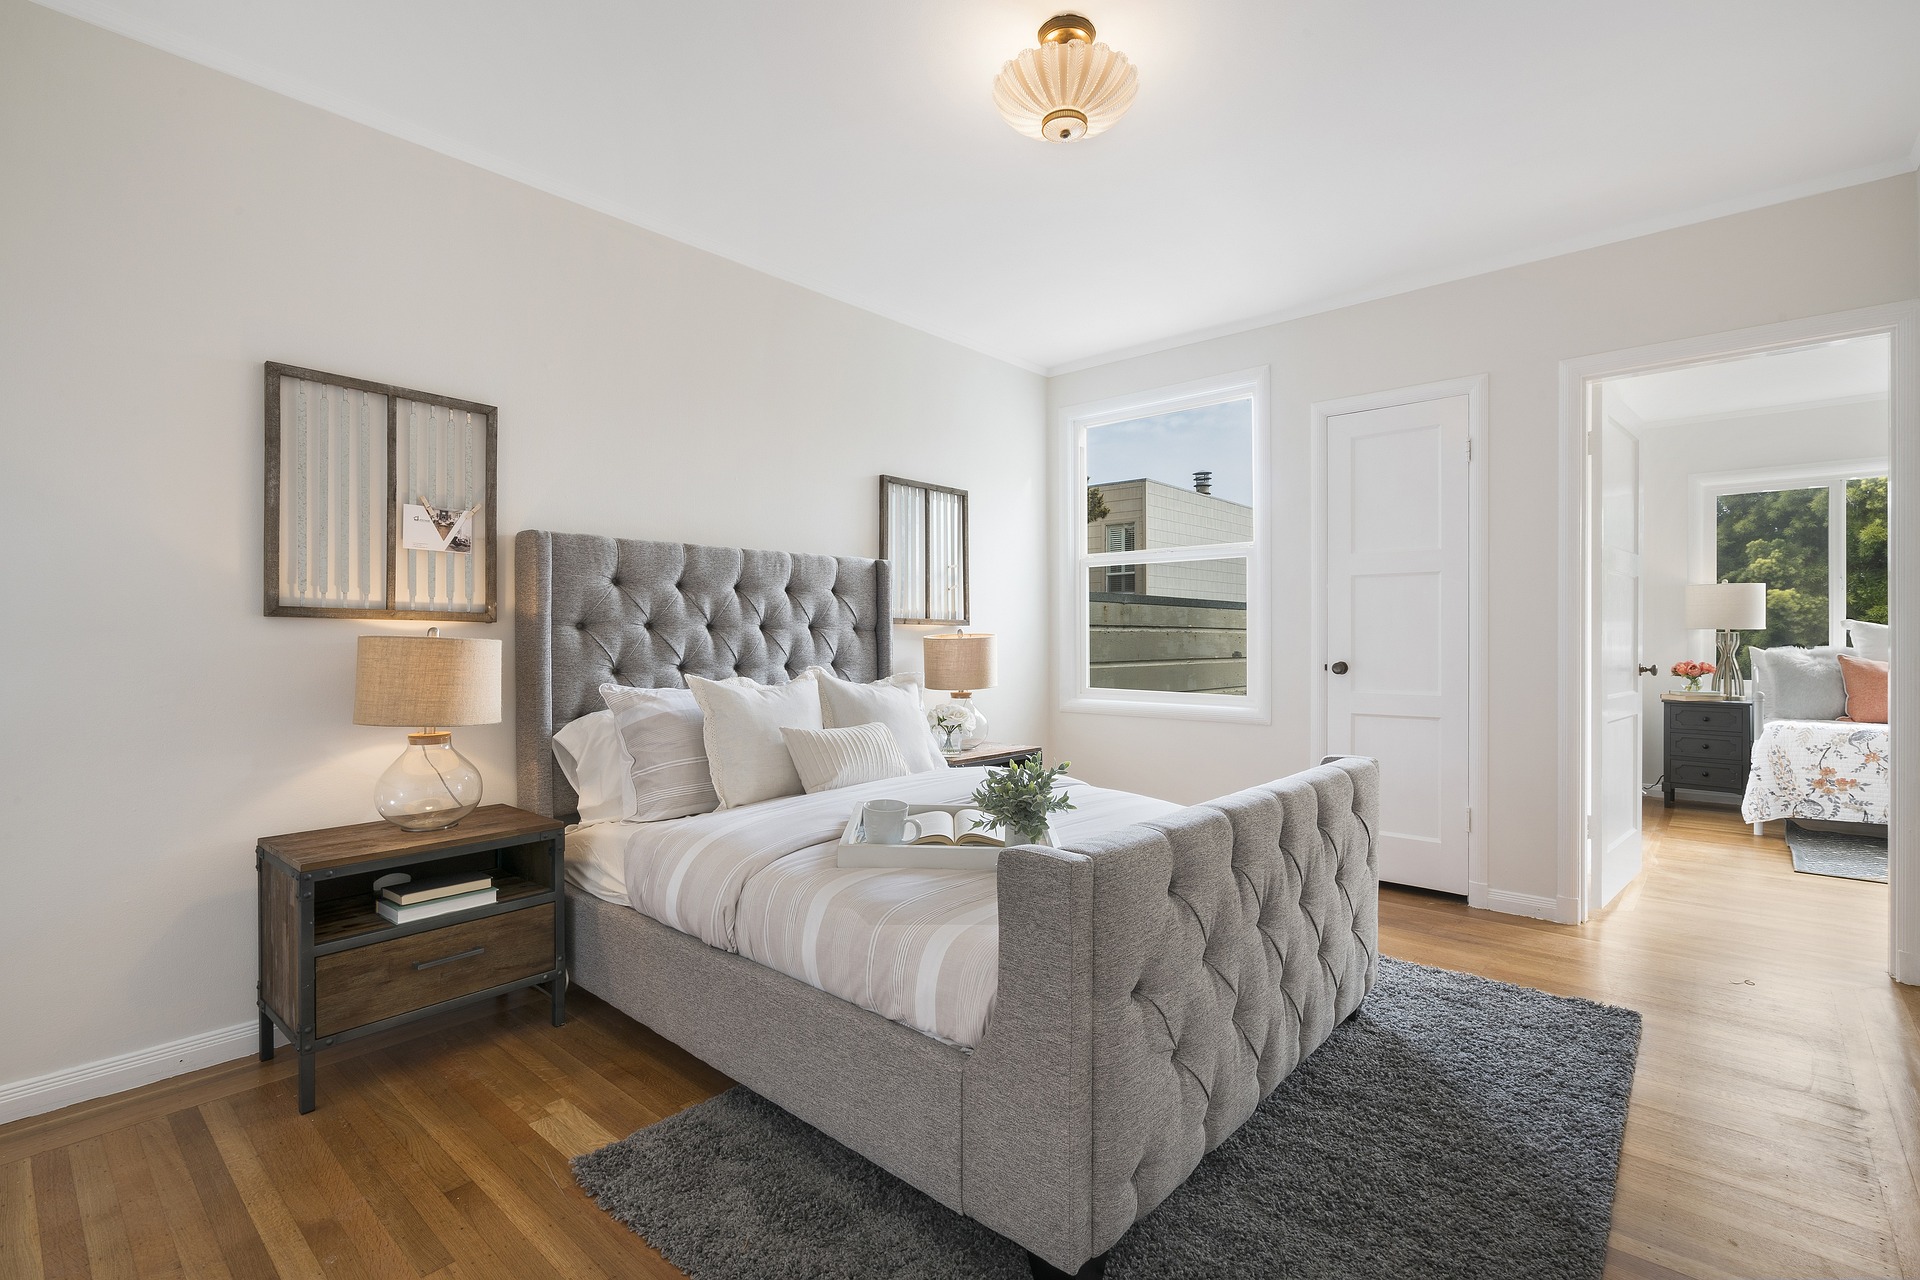 Łóżka tapicerowane: komfort, estetyka i funkcjonalność w Twojej sypialni